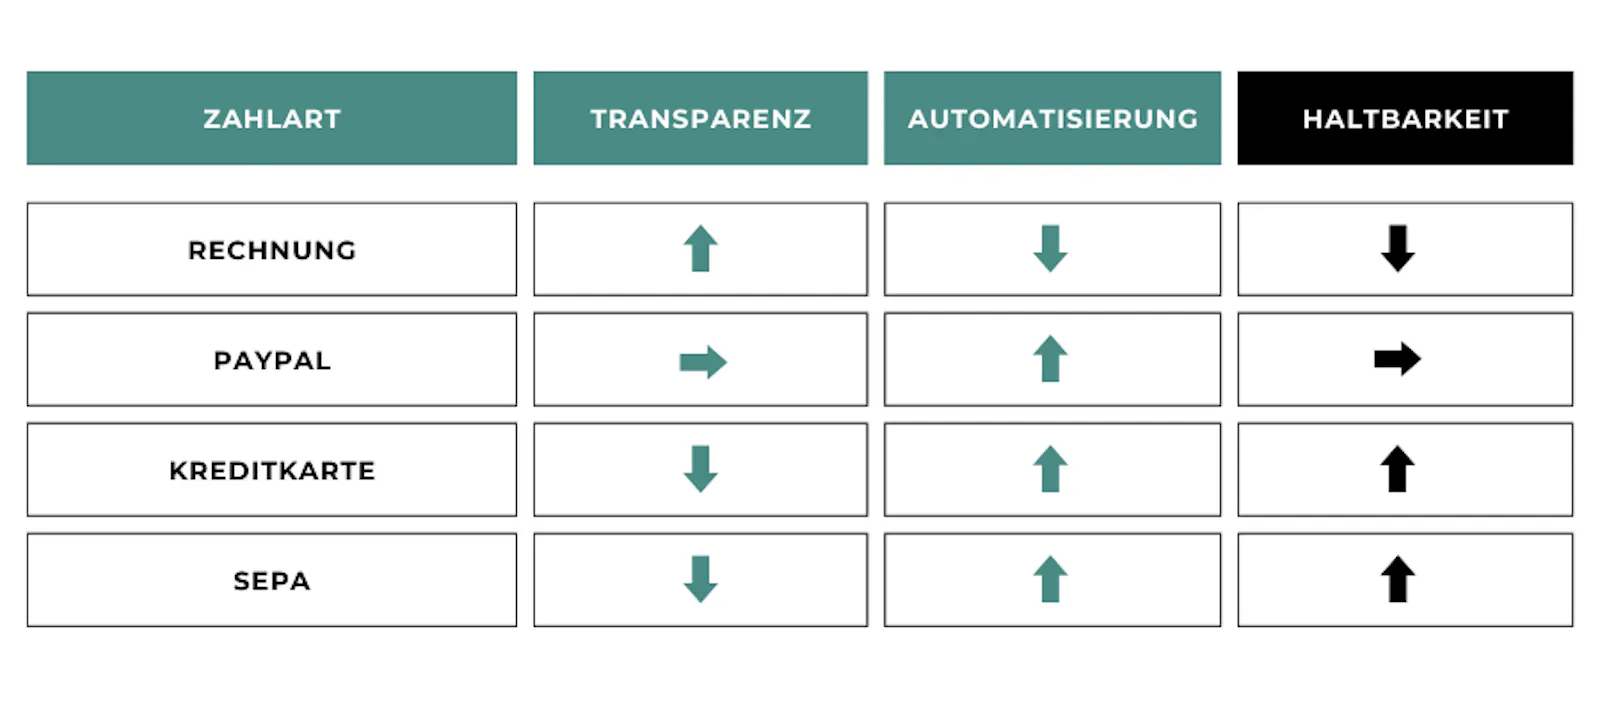 Einordnung der Zahlarten nach Transparenz und Automatisierung